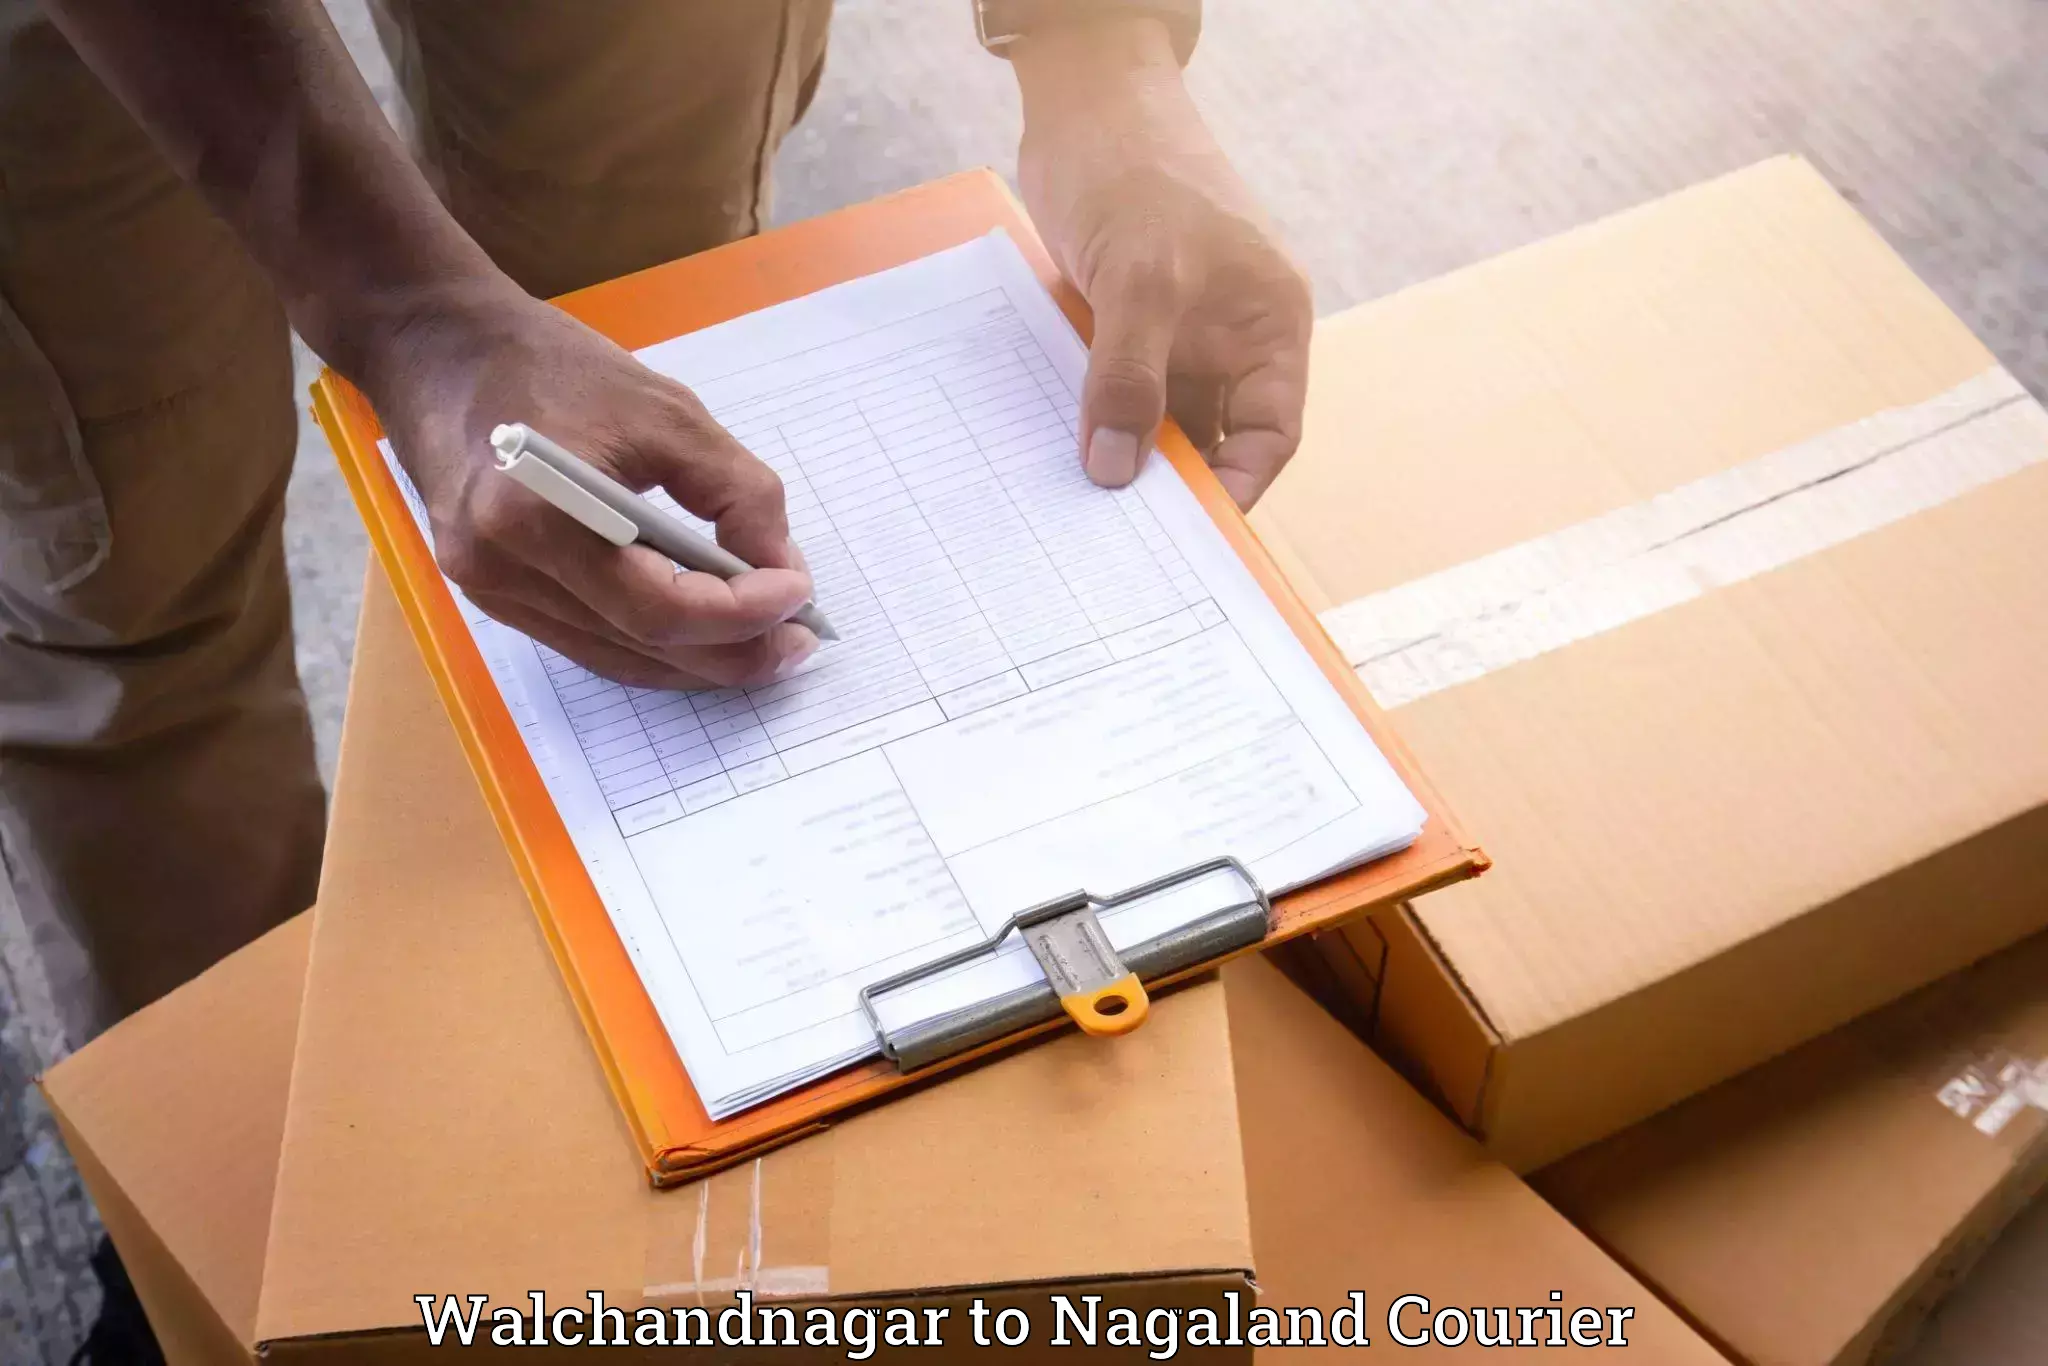 Furniture delivery service Walchandnagar to Dimapur